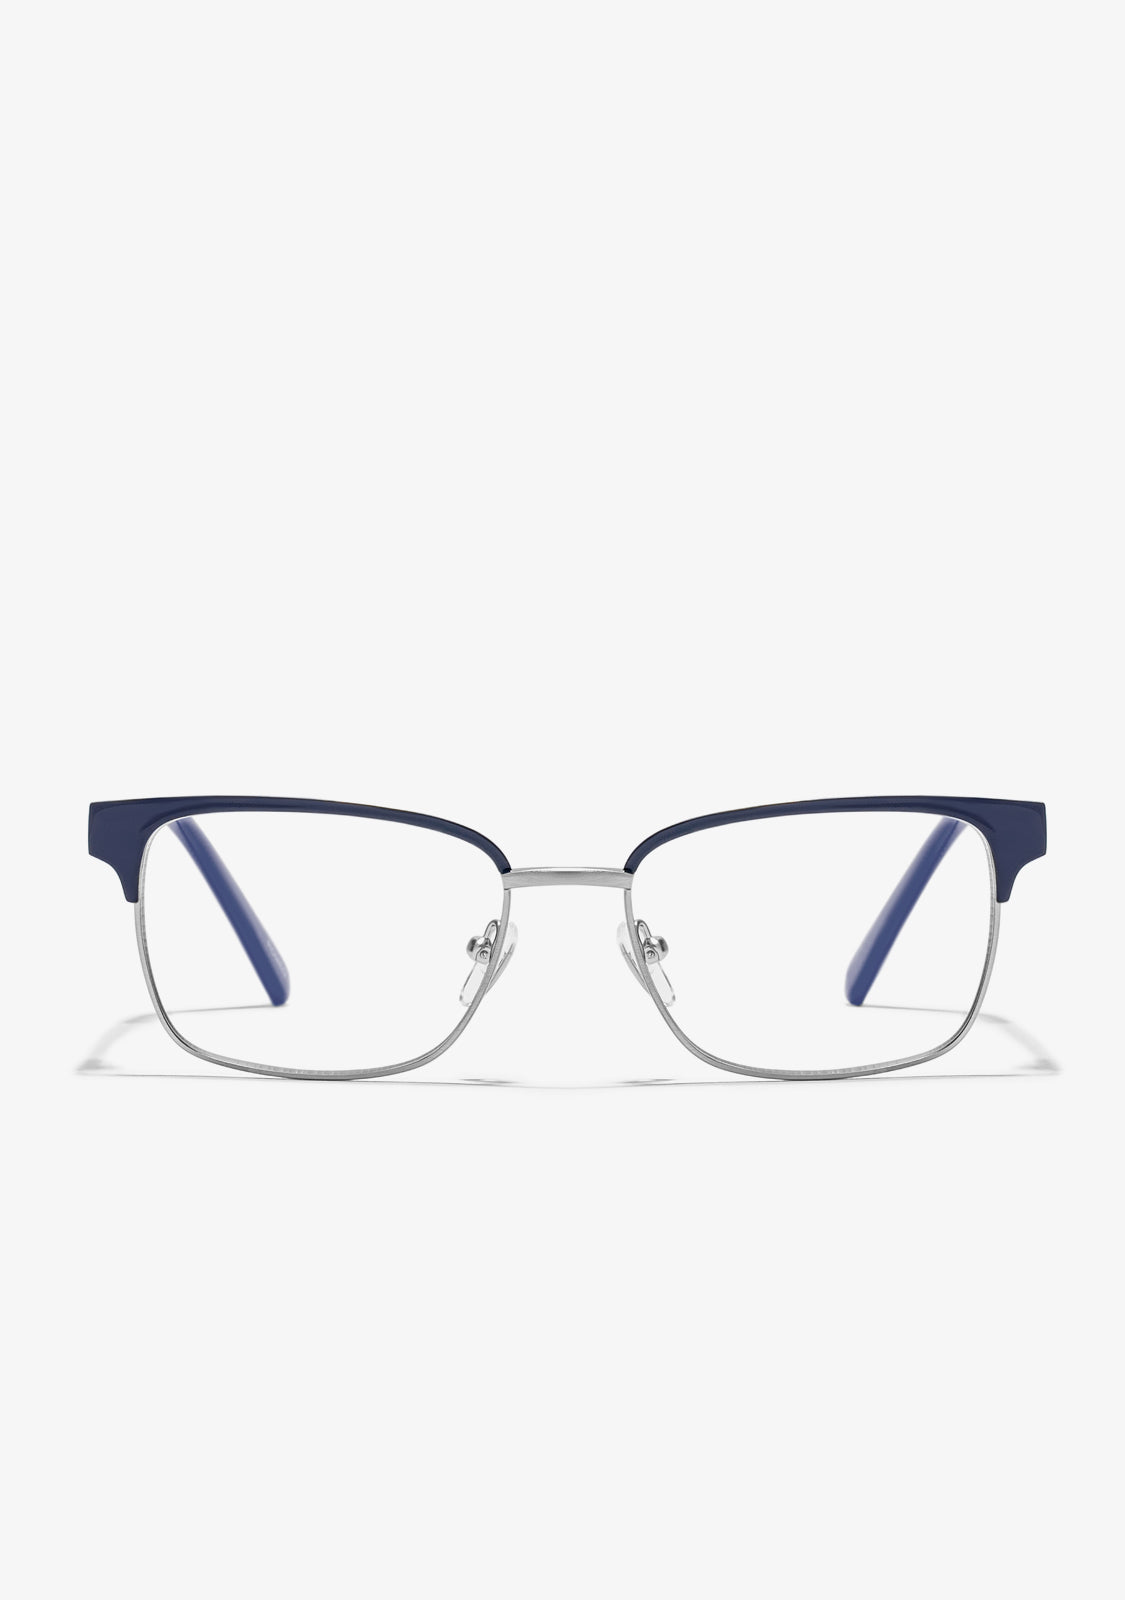 Square Blue Light Glasses - Blue Light Glasses